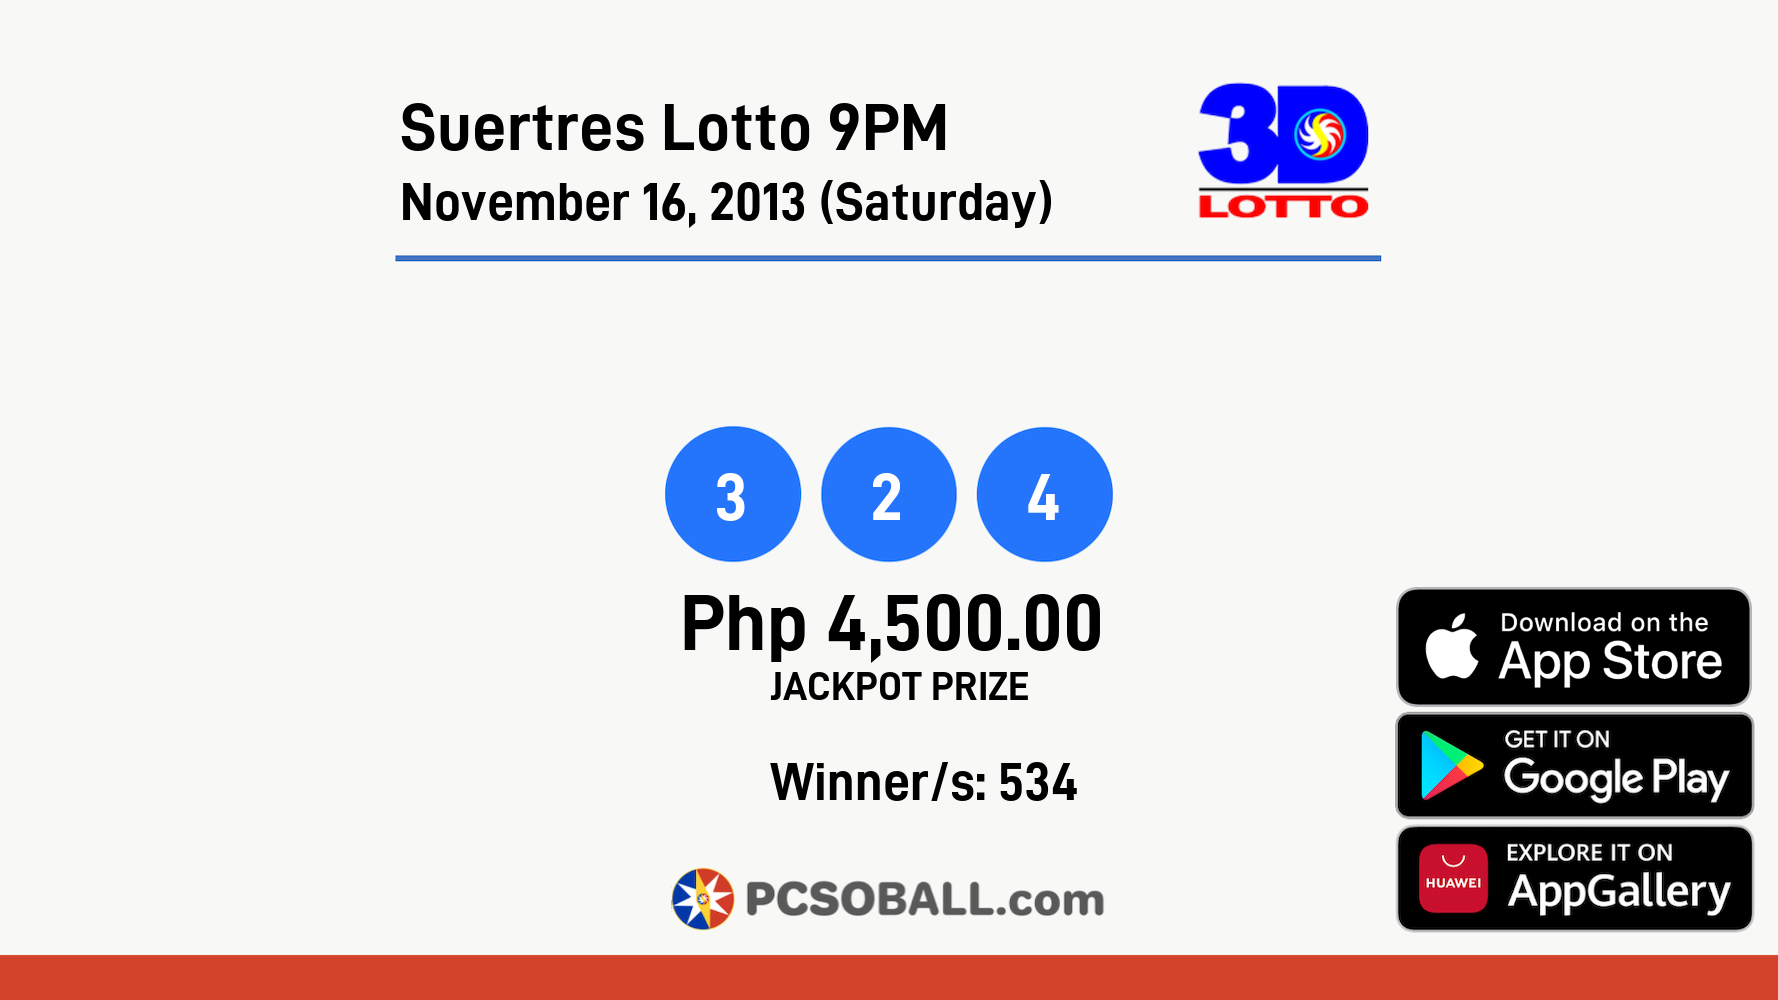 Suertres Lotto 9PM November 16, 2013 (Saturday) Result